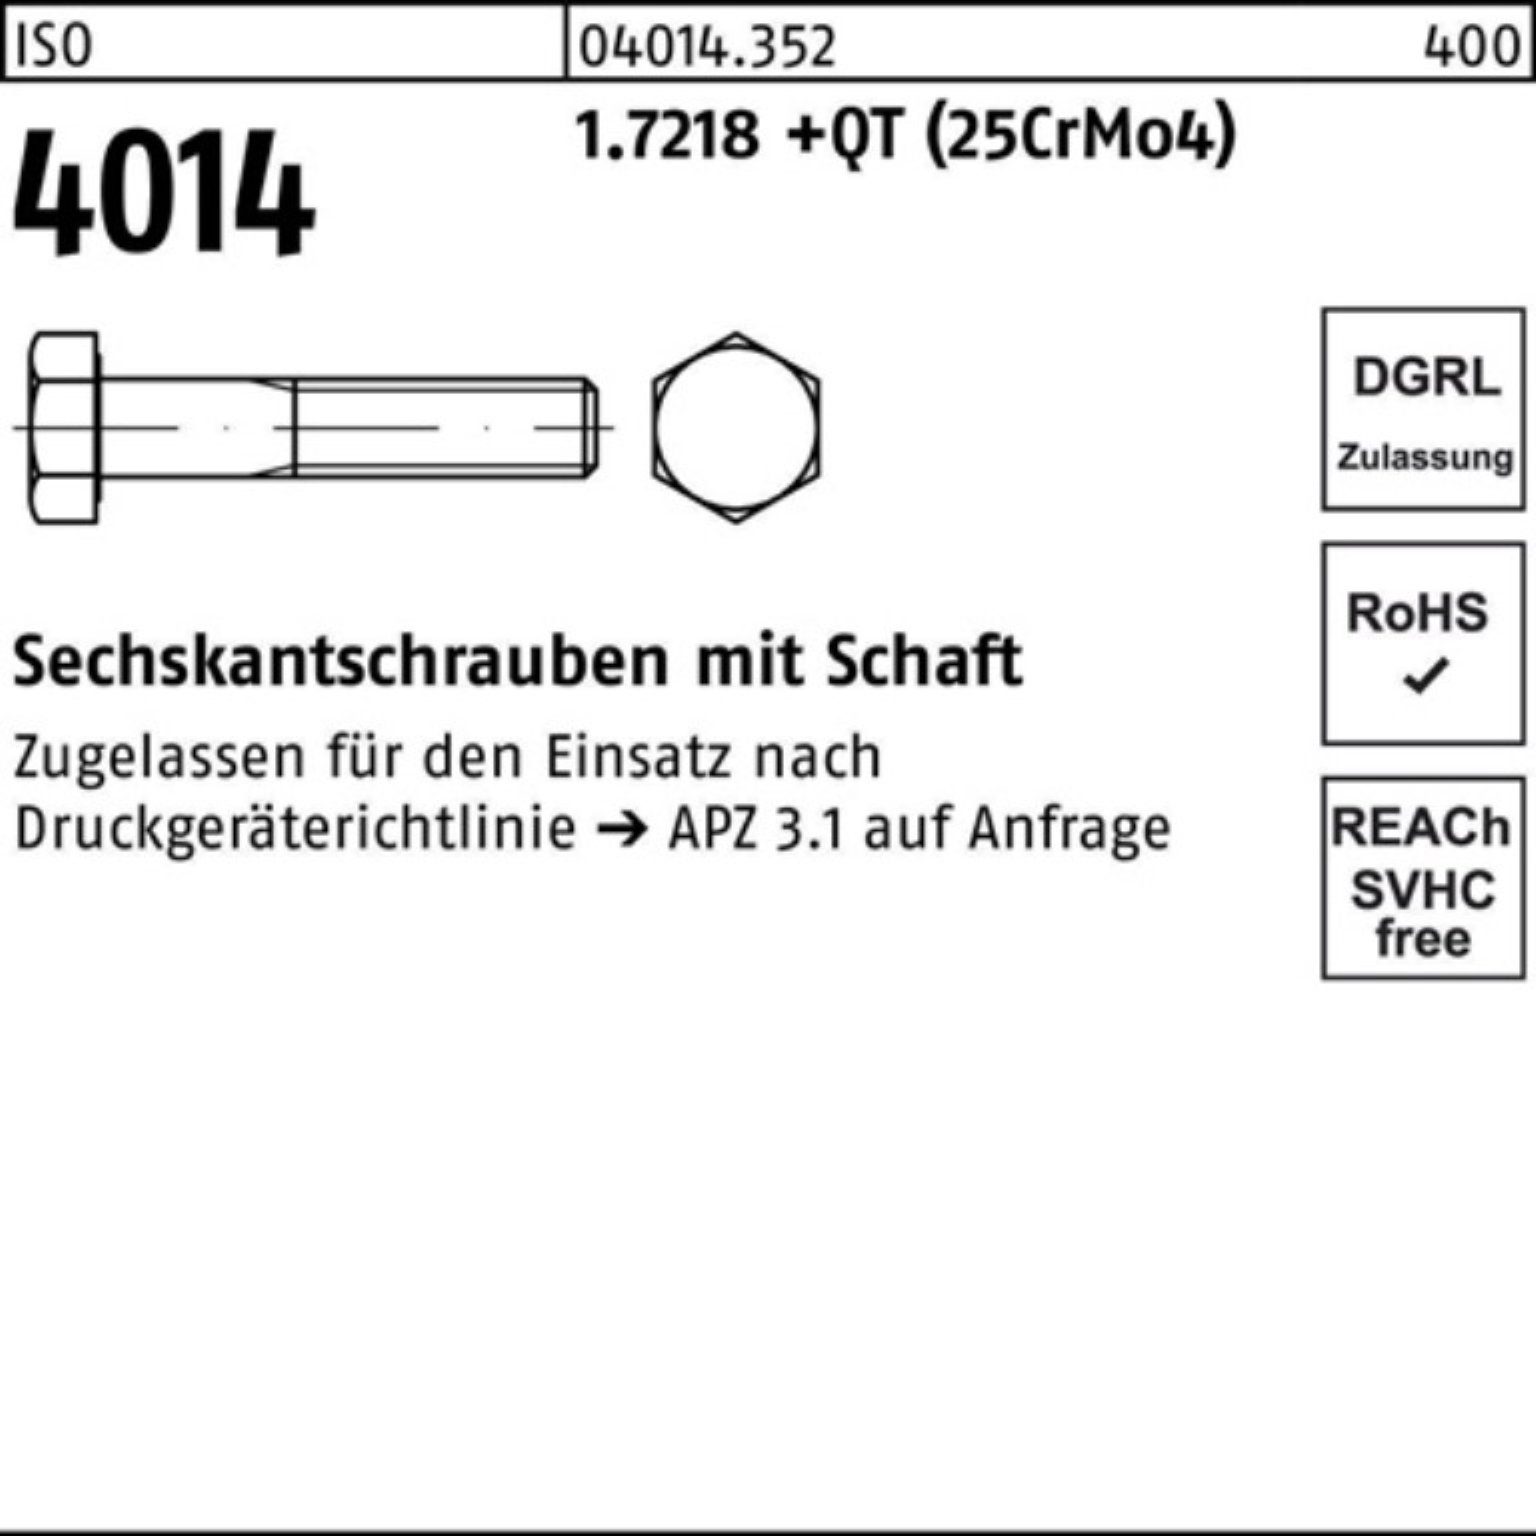 Bufab Sechskantschraube 100er Pack Sechskantschraube 4014 1.7218 190 ISO M27x Schaft +QT (25Cr